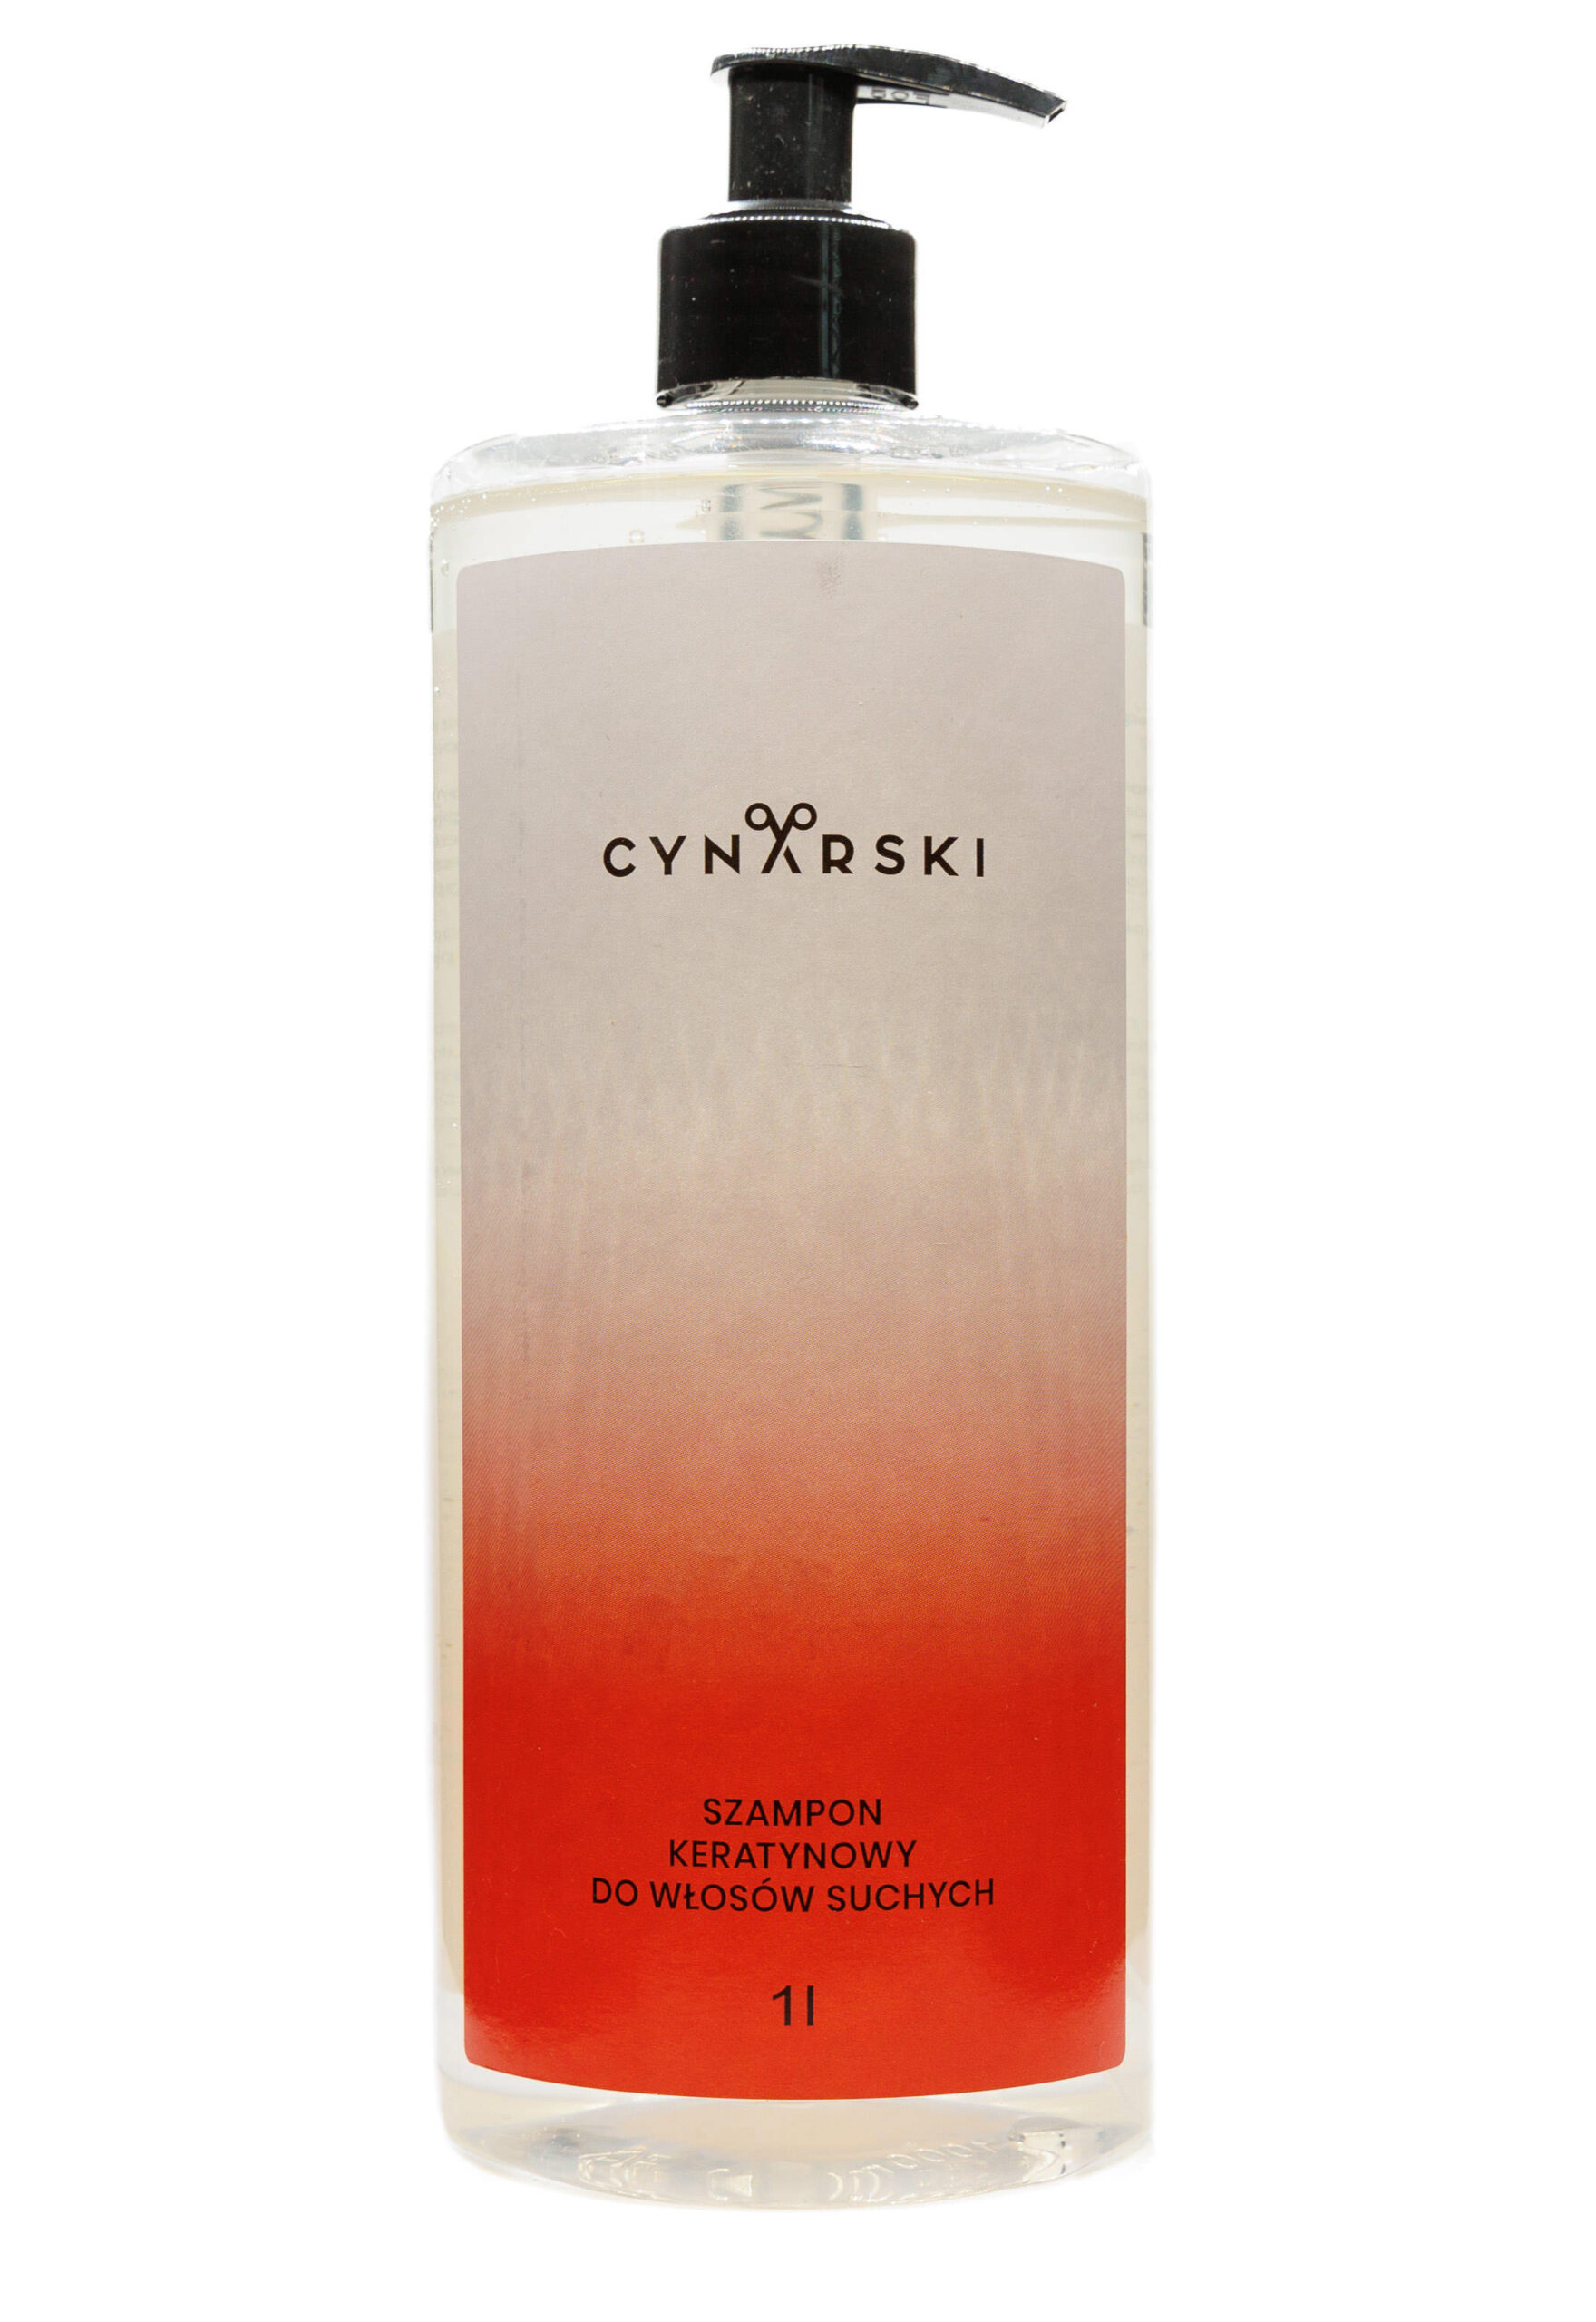 cynarski szampon